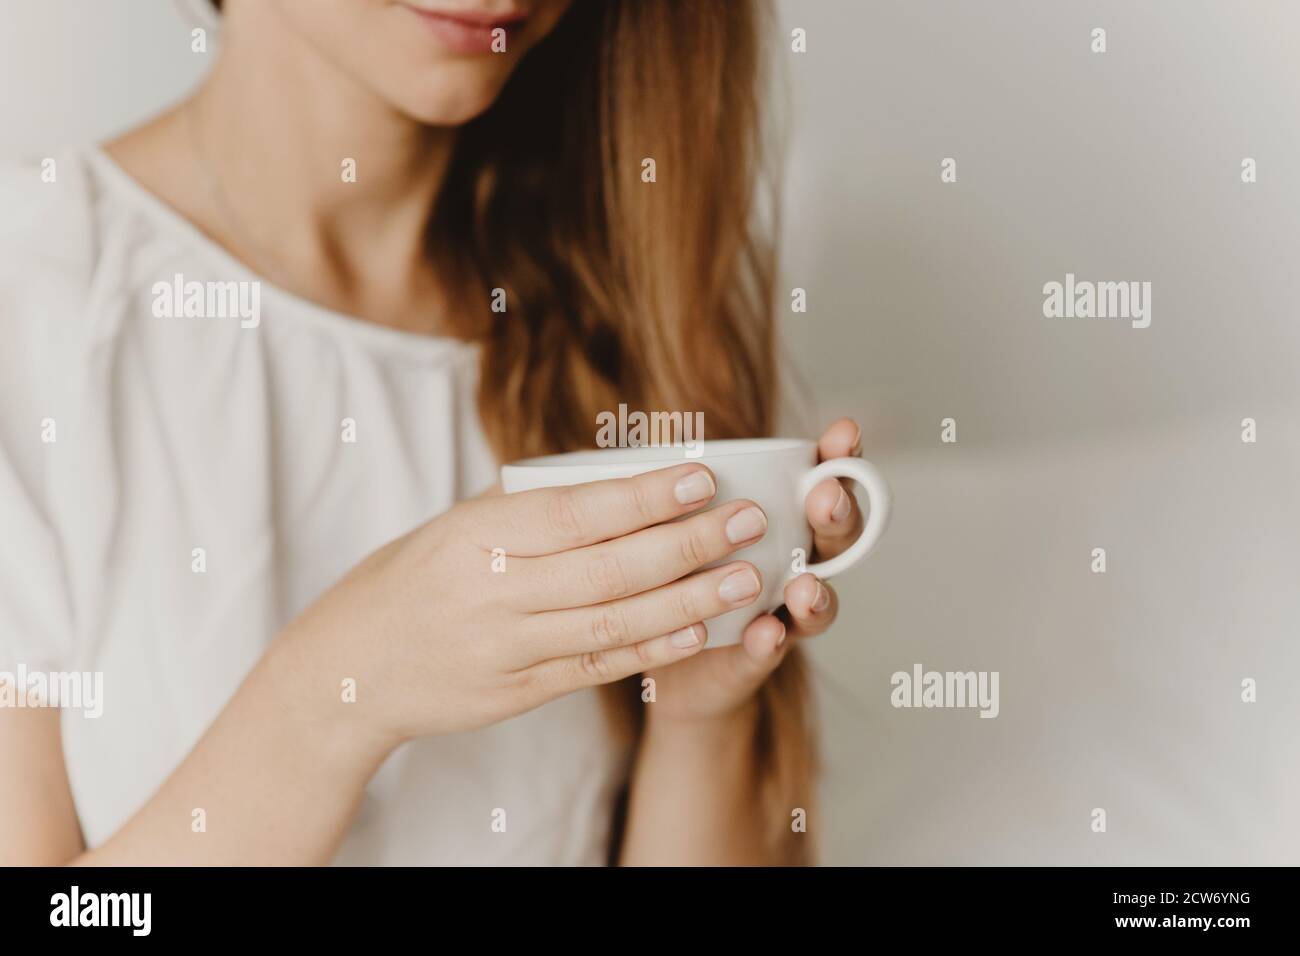 Beschnittene Ansicht der Frau mit langen Haaren hält Tasse Kaffee oder Tee Nahaufnahme. Stockfoto